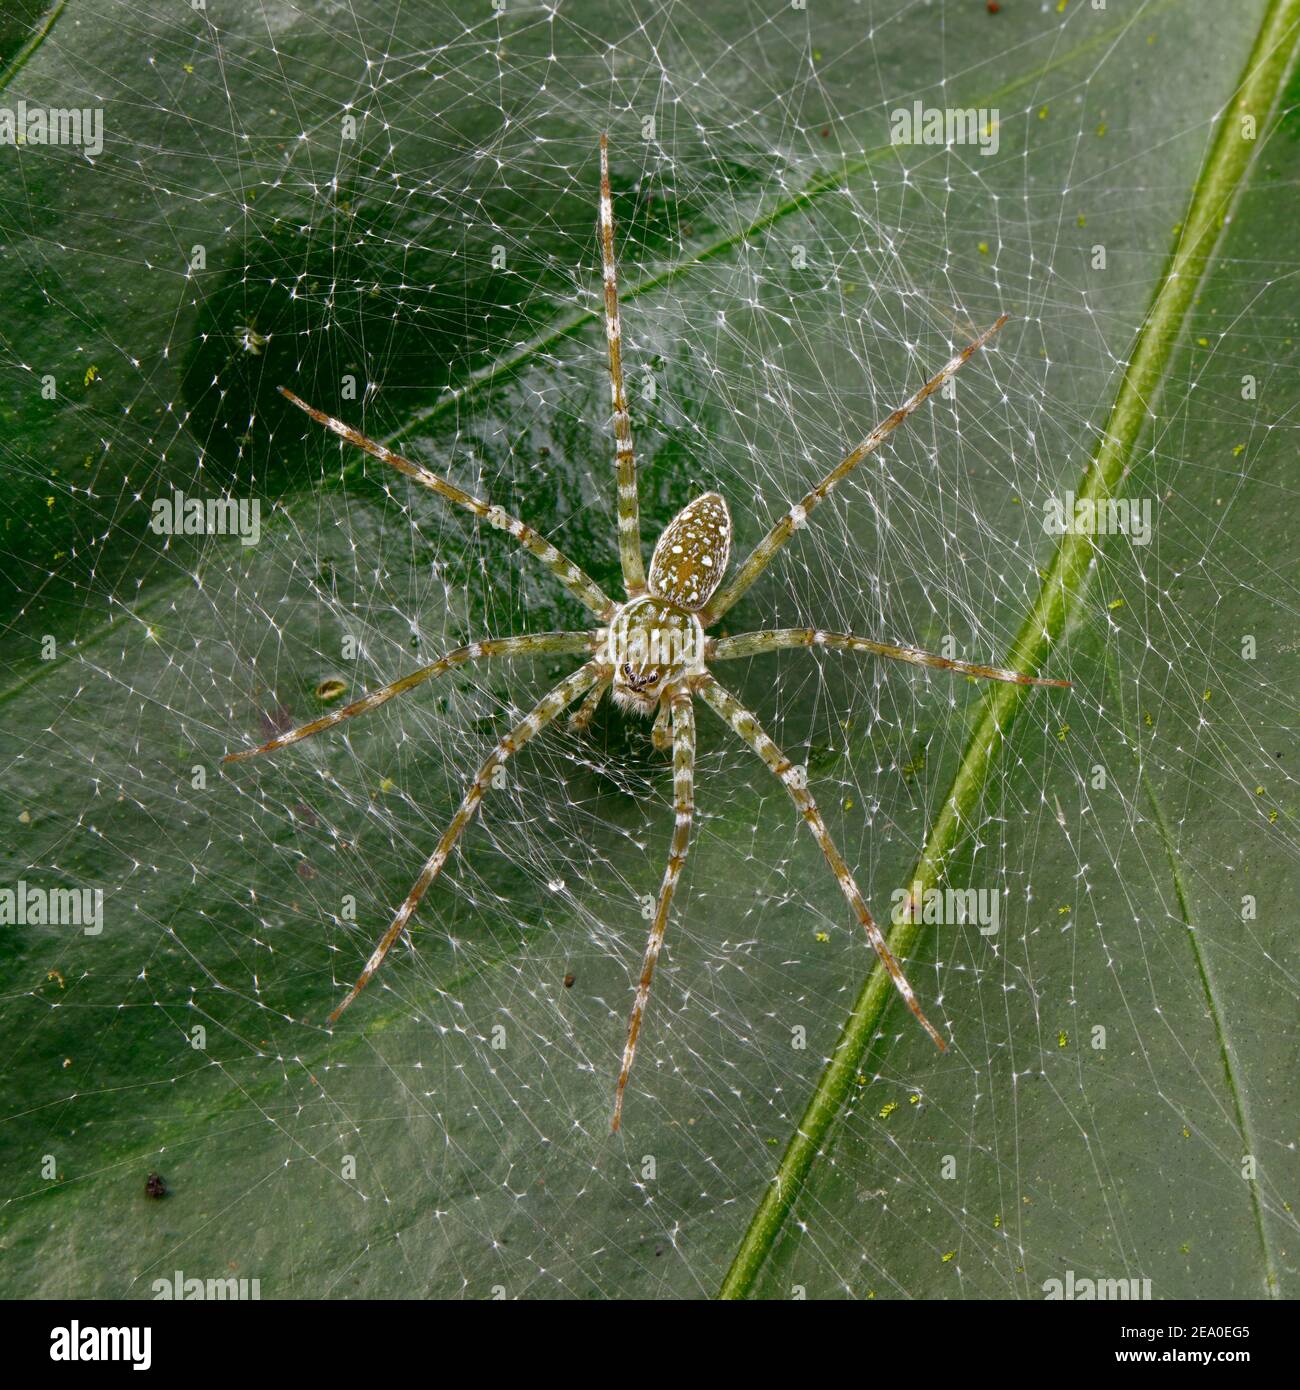 Un ragno da pesca verde, la specie Dolomedes, su una rete attaccata ad una foglia. Foto Stock